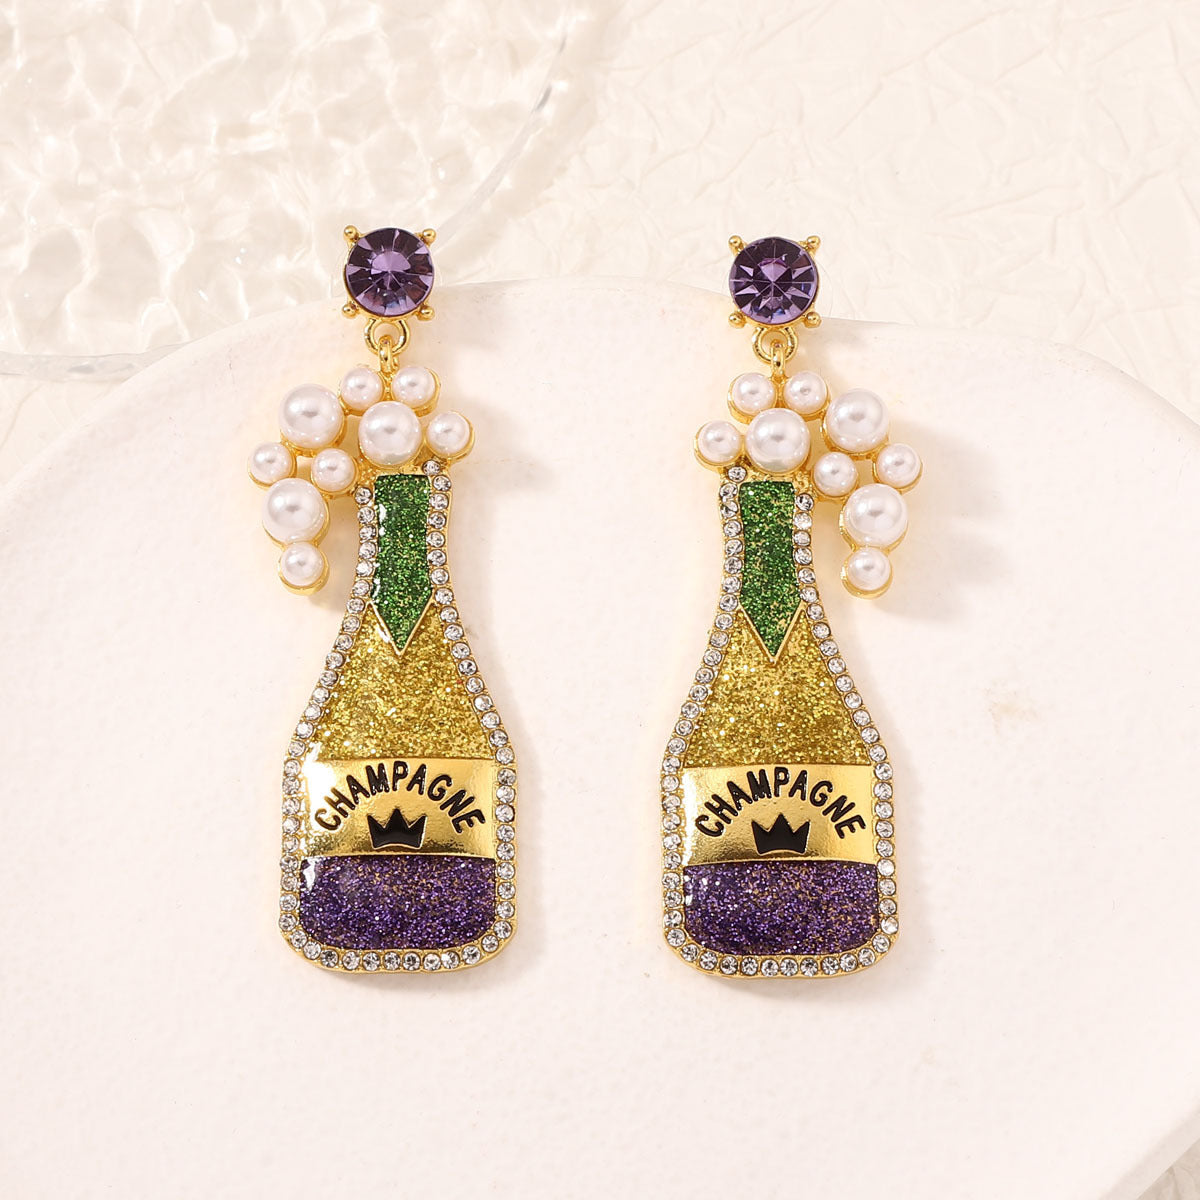 Cute beer bottle earrings within purple